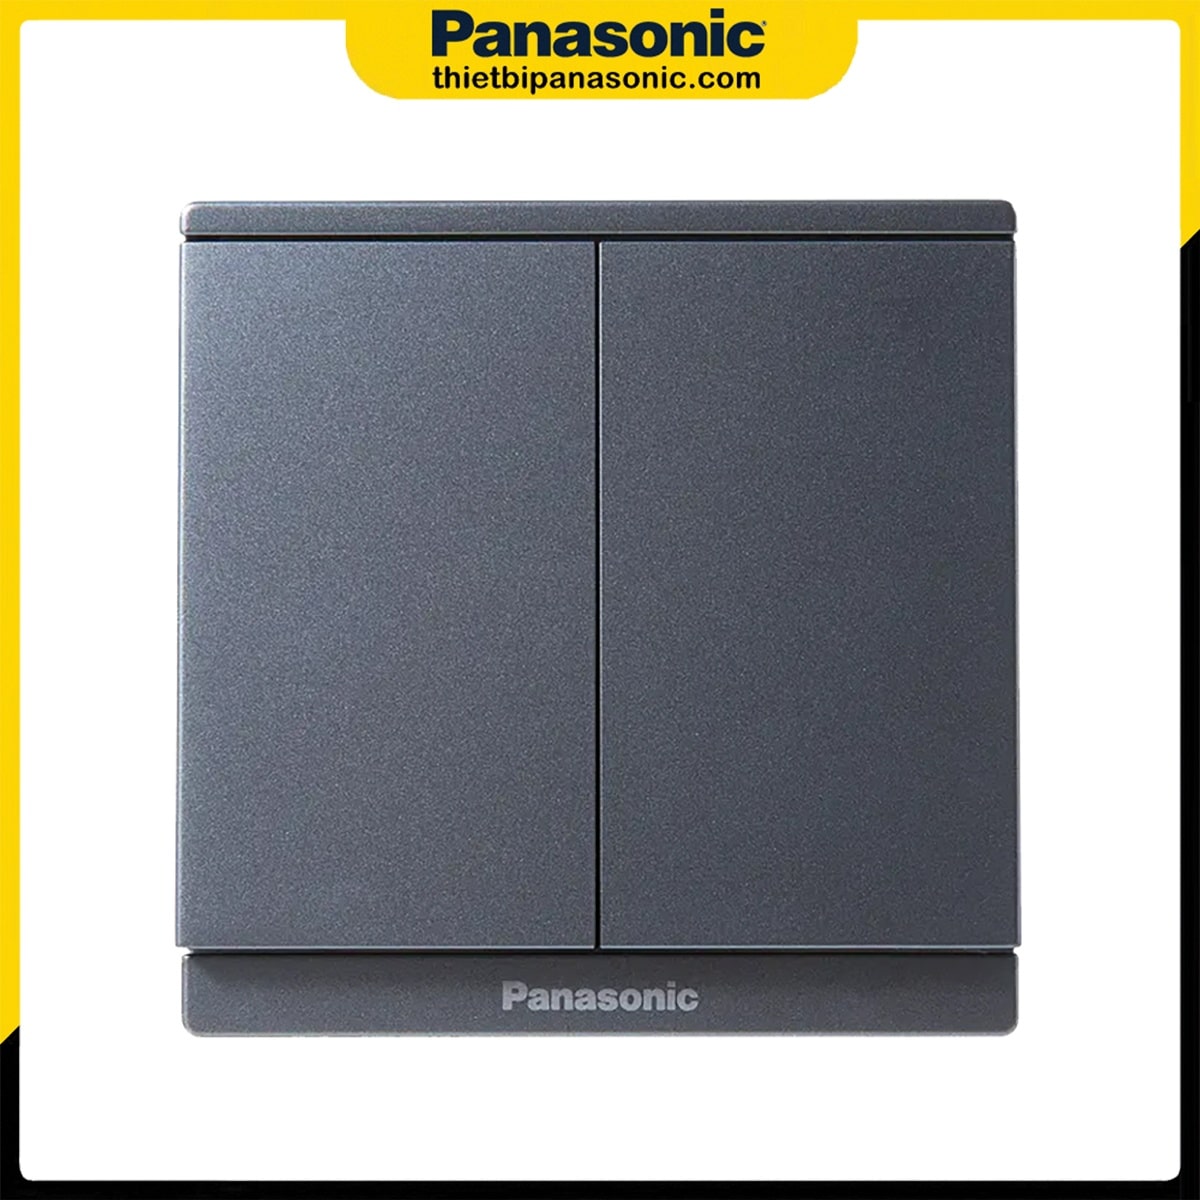 Bộ 2 công tắc 1 chiều Panasonic có chỉ báo dạ quang màu xám ánh kim WMF503MYH-VN